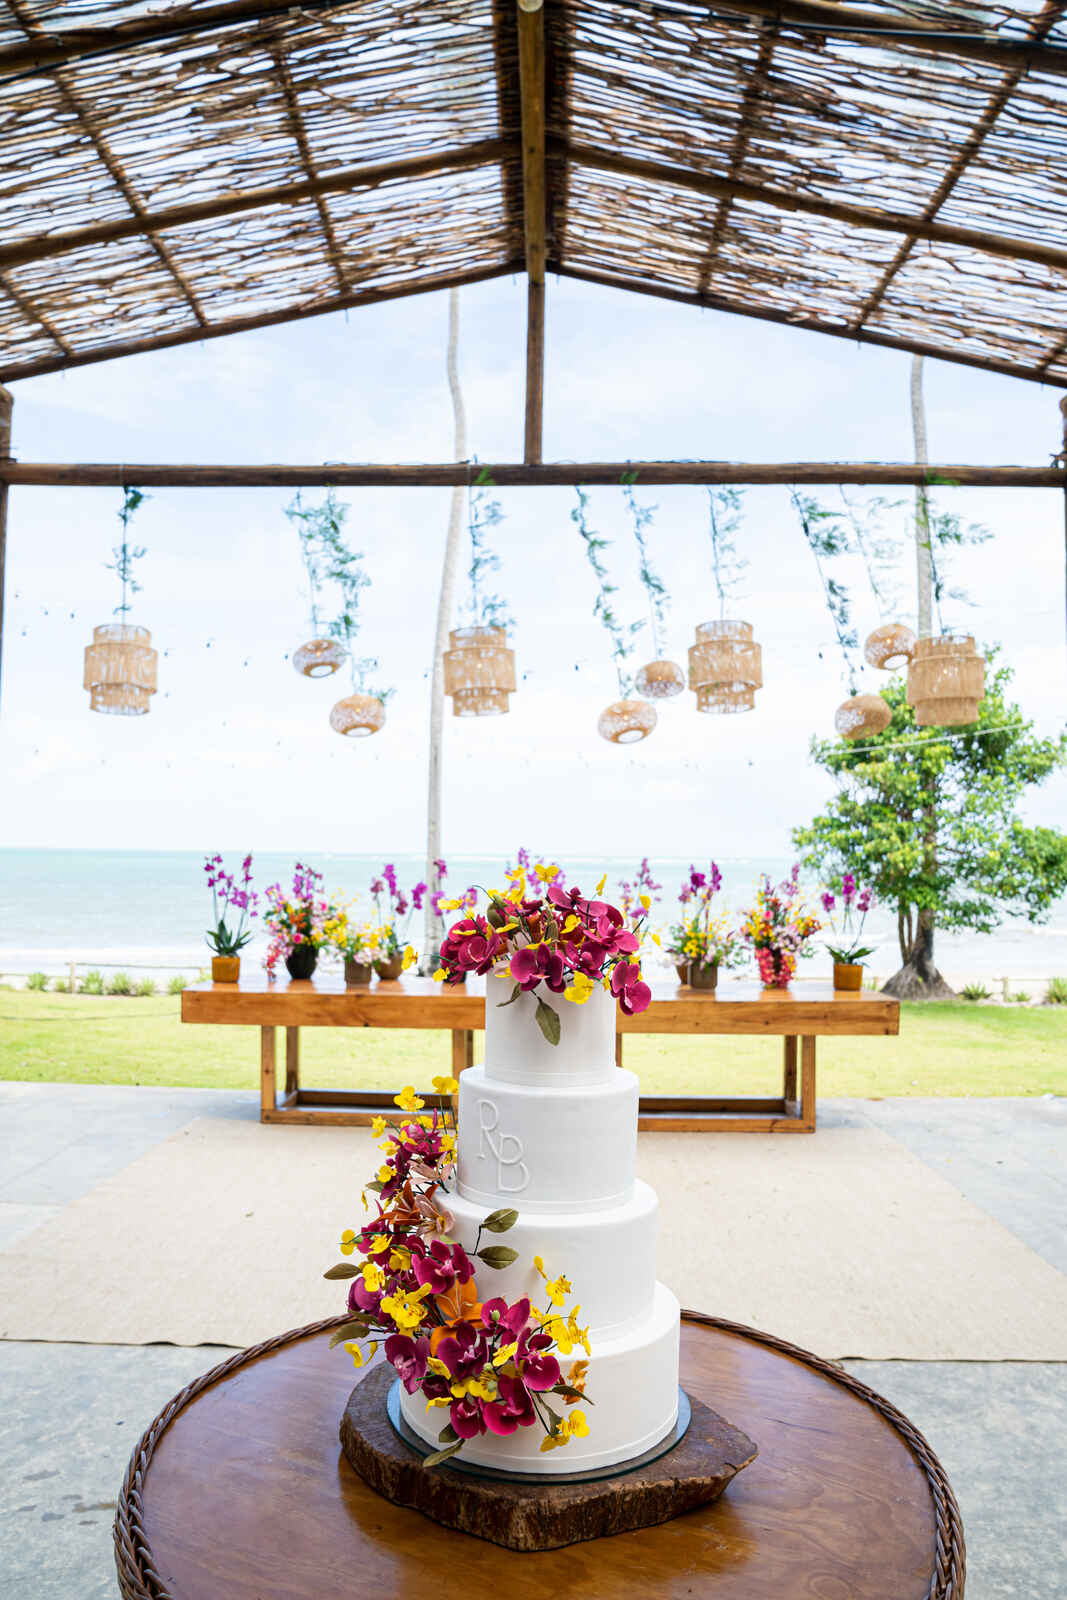 mesa de madeira com doces e orquideas e mesa redonda com bolo de casamento com 3 andares